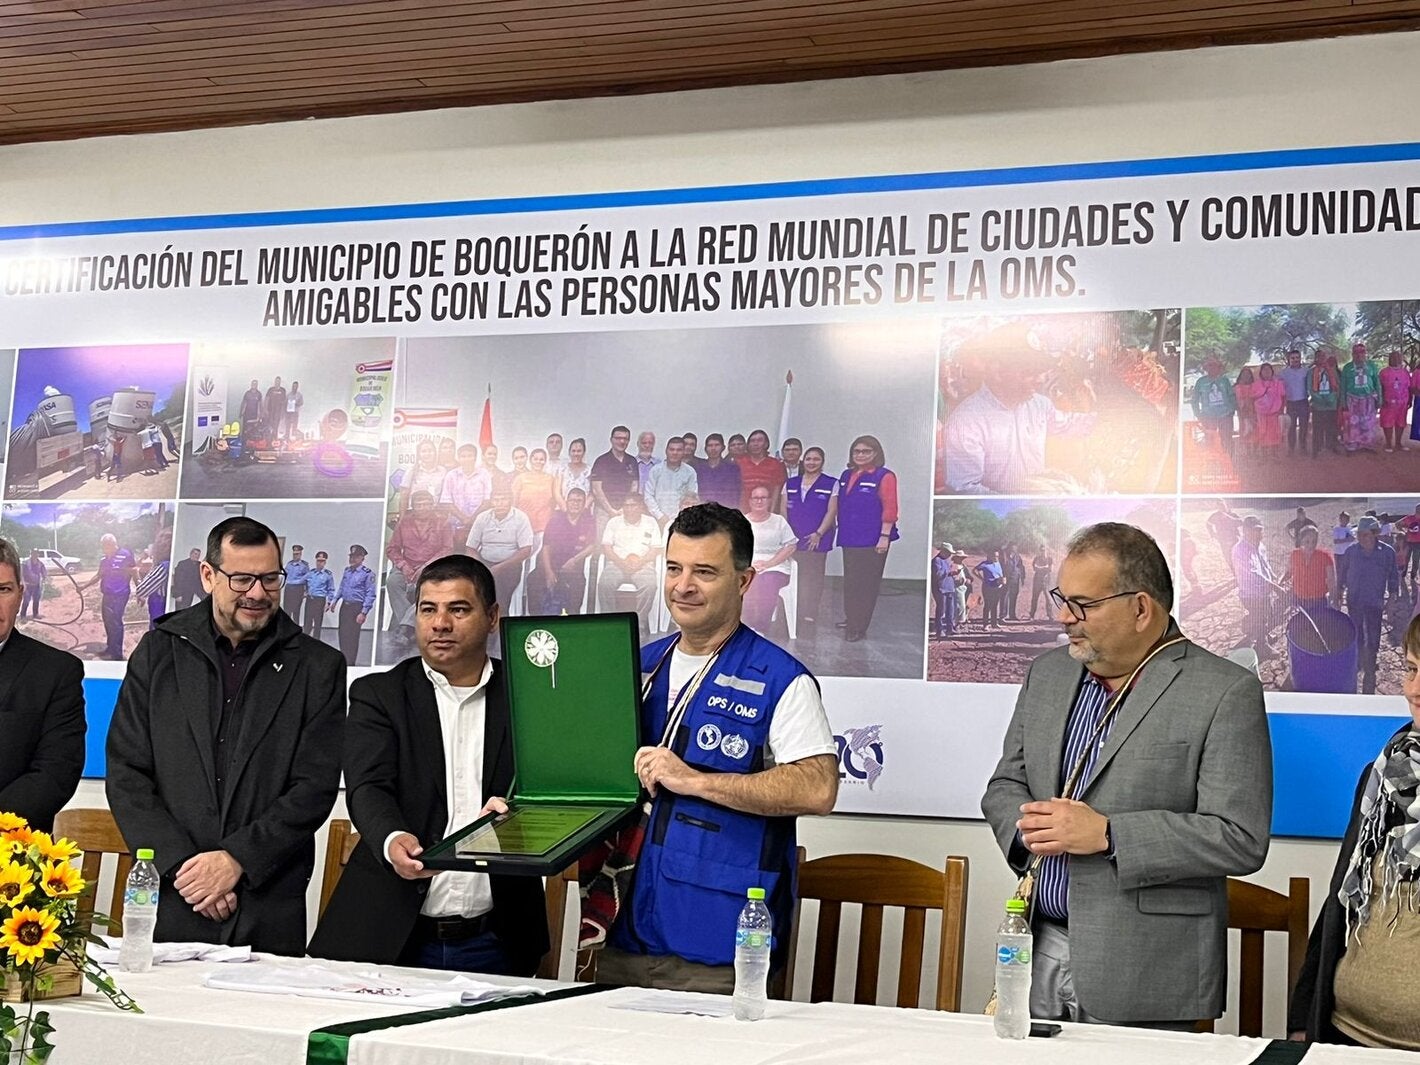 Acto de Entrega de la Certificación del Acto de Entrega de la Certificación del Municipio de Boquerón en el Chaco paraguayo de la Red Mundial de ciudades y comunidades amigables de las personas mayores de la Organización Mundial de la Salud (OMS)